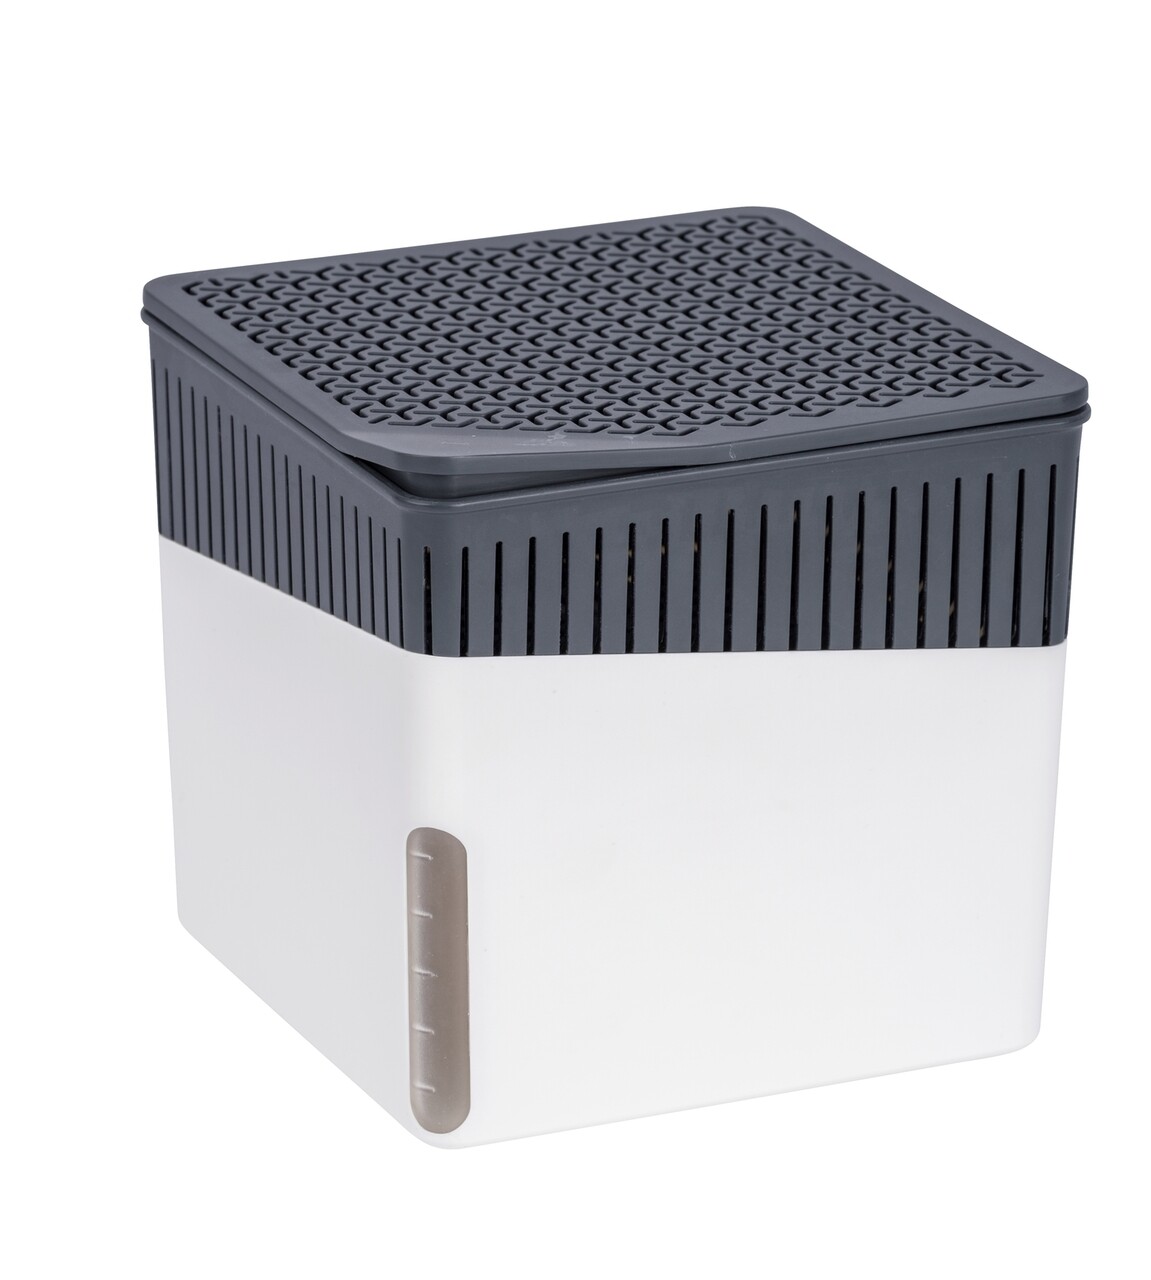 Légtisztító, Wenko, Cube 1000 g, 16.5 x 15.7 x 16.5 cm, műanyag, fehér